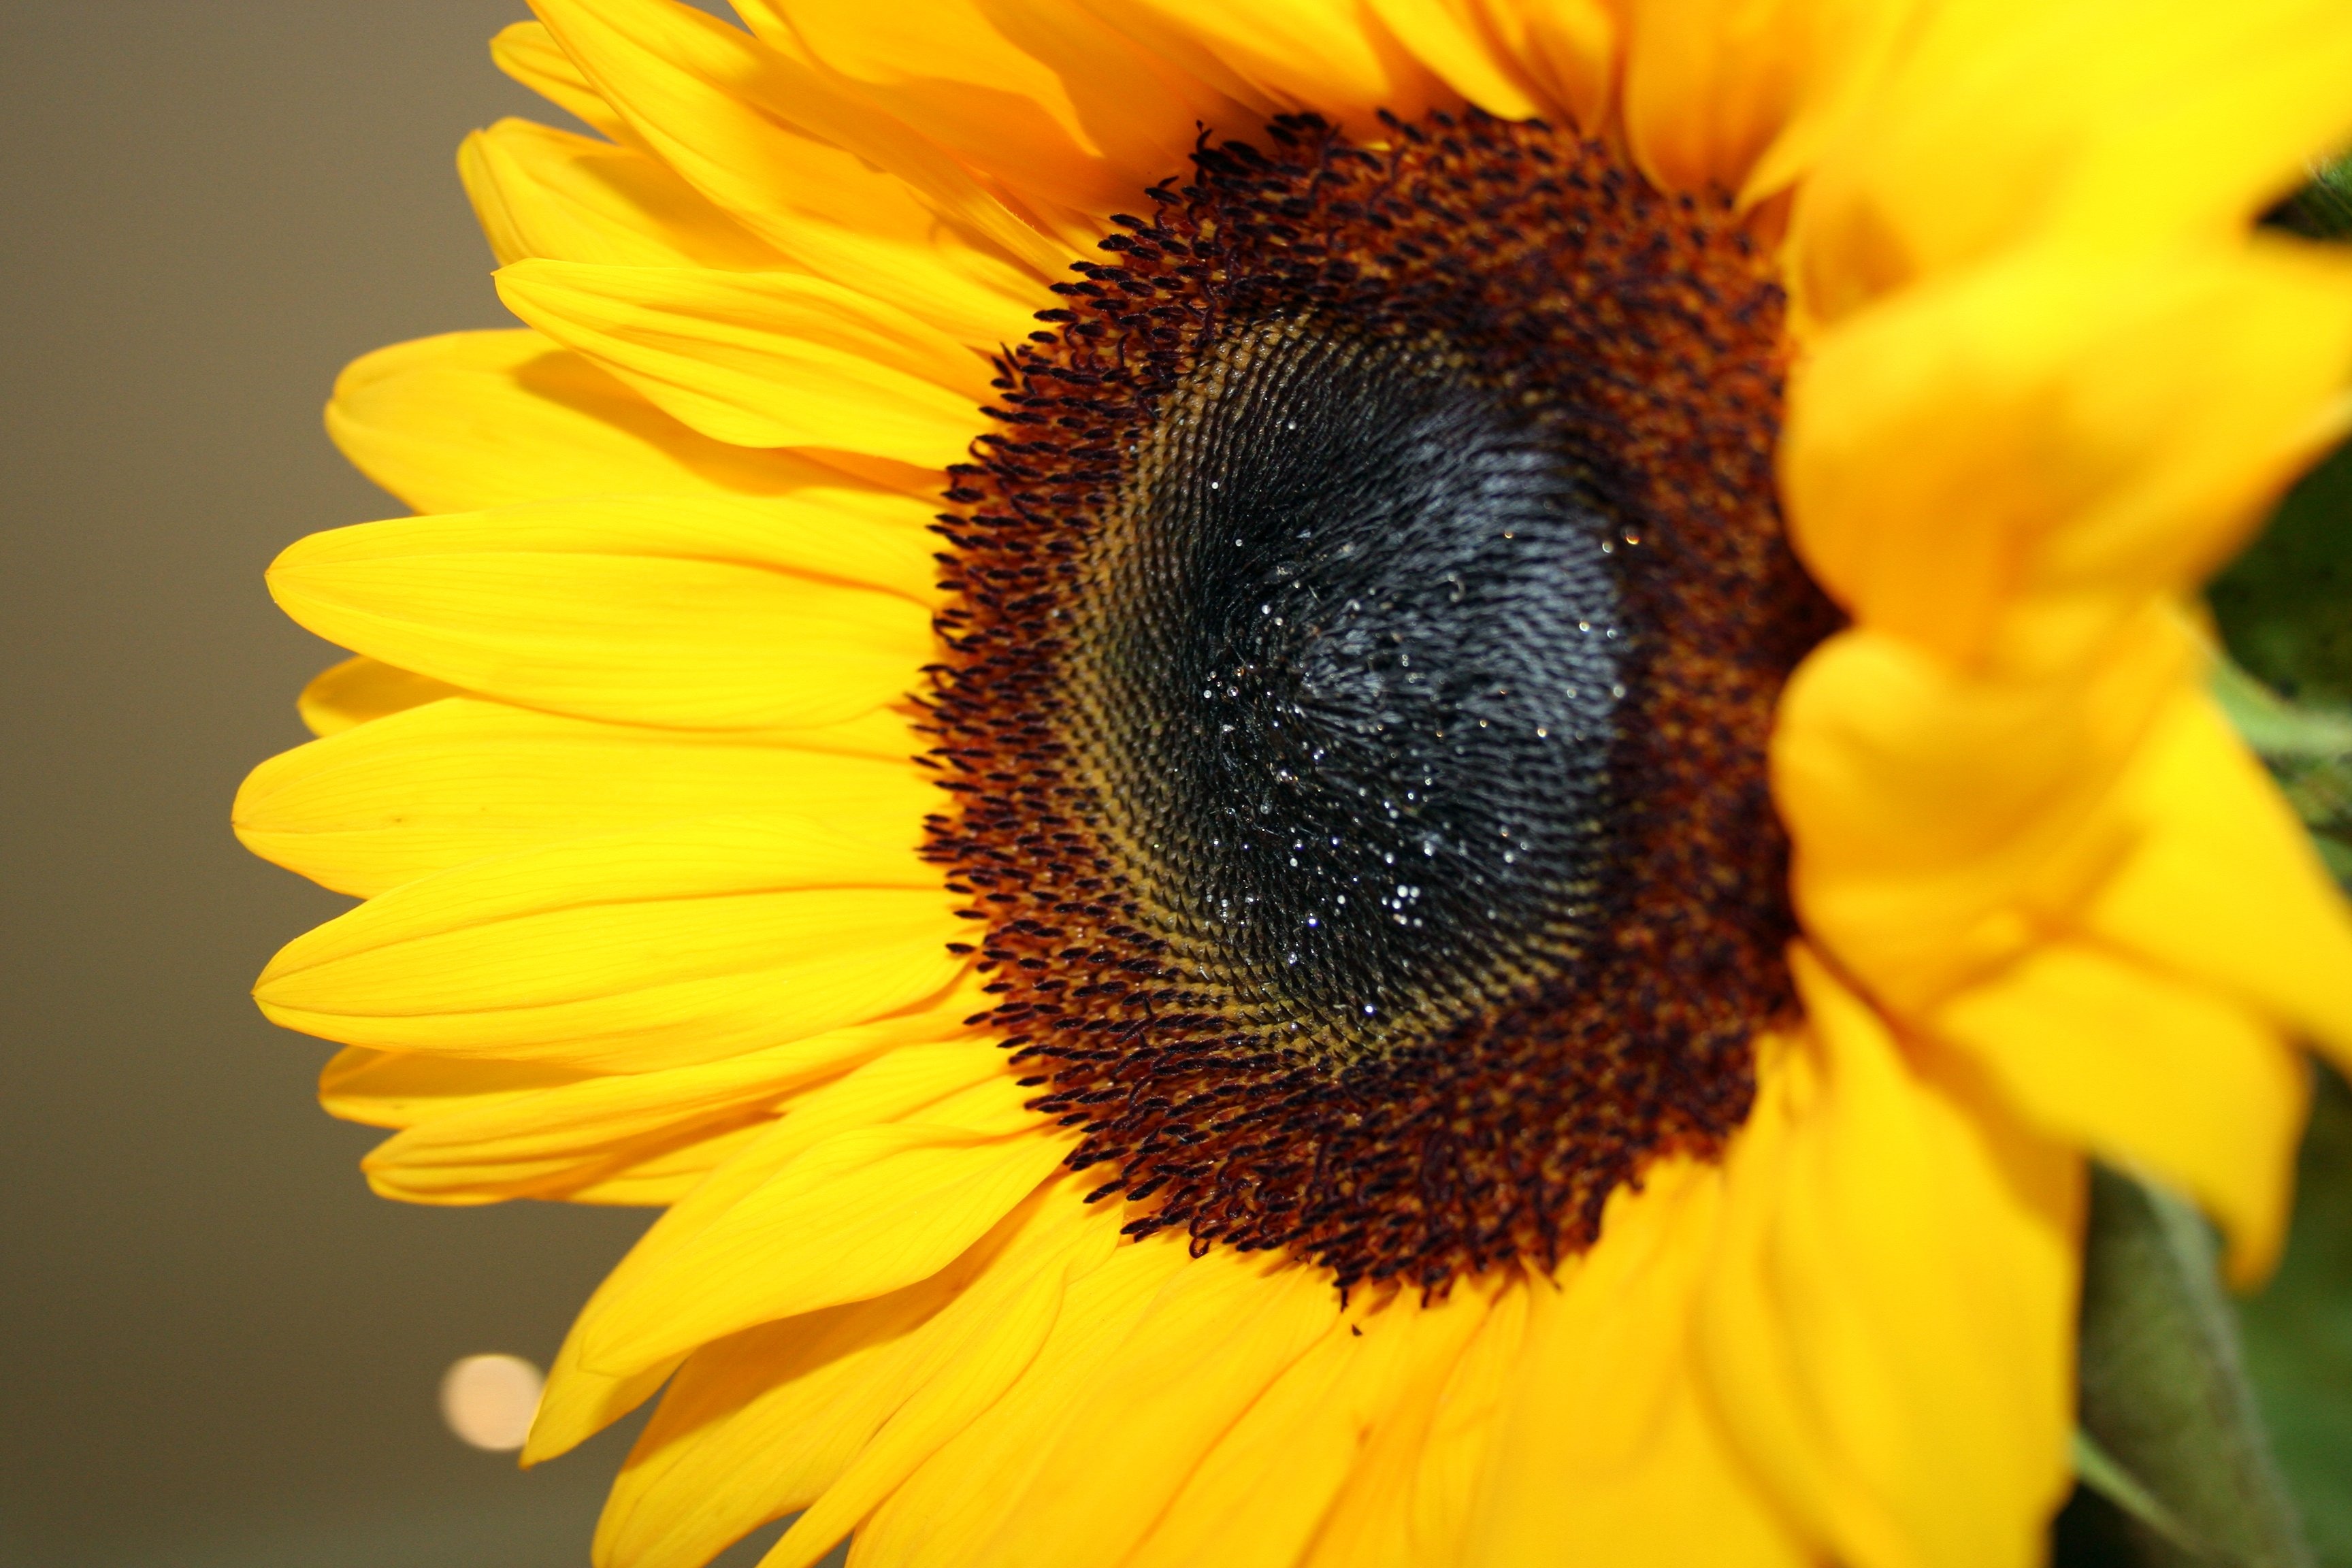 sunflower image